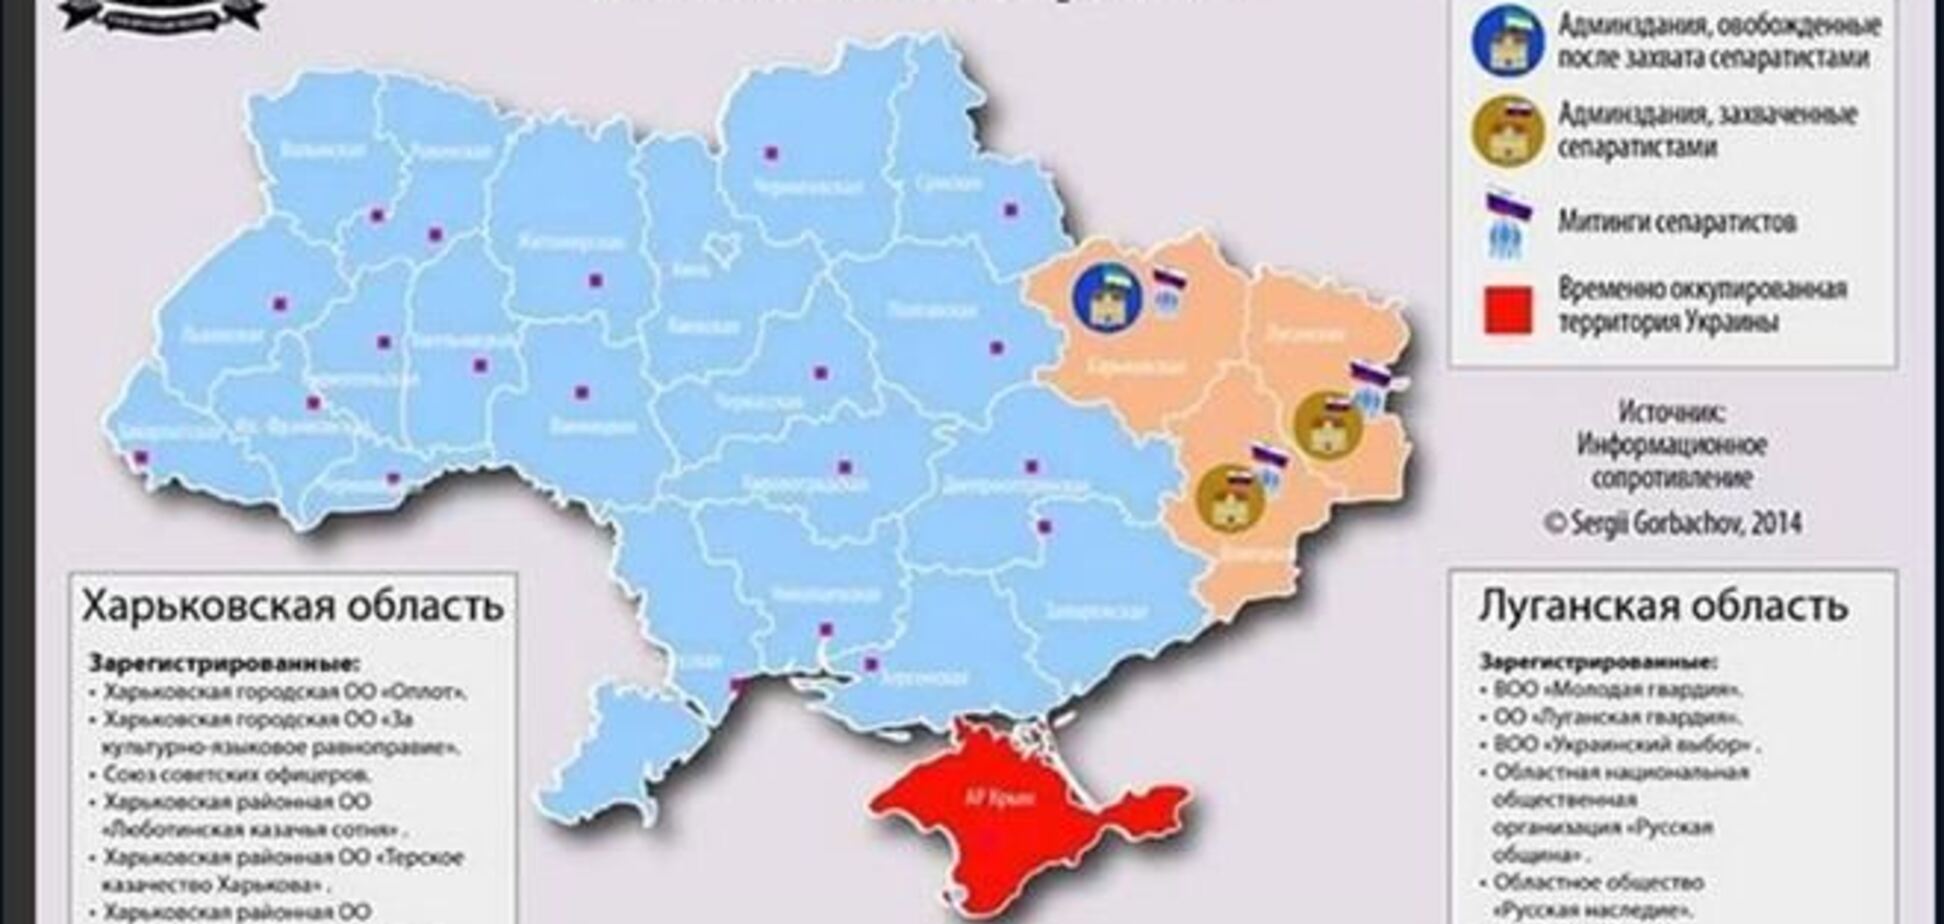 Опубликована актуальная карта сепаратистских выступлений в Украине